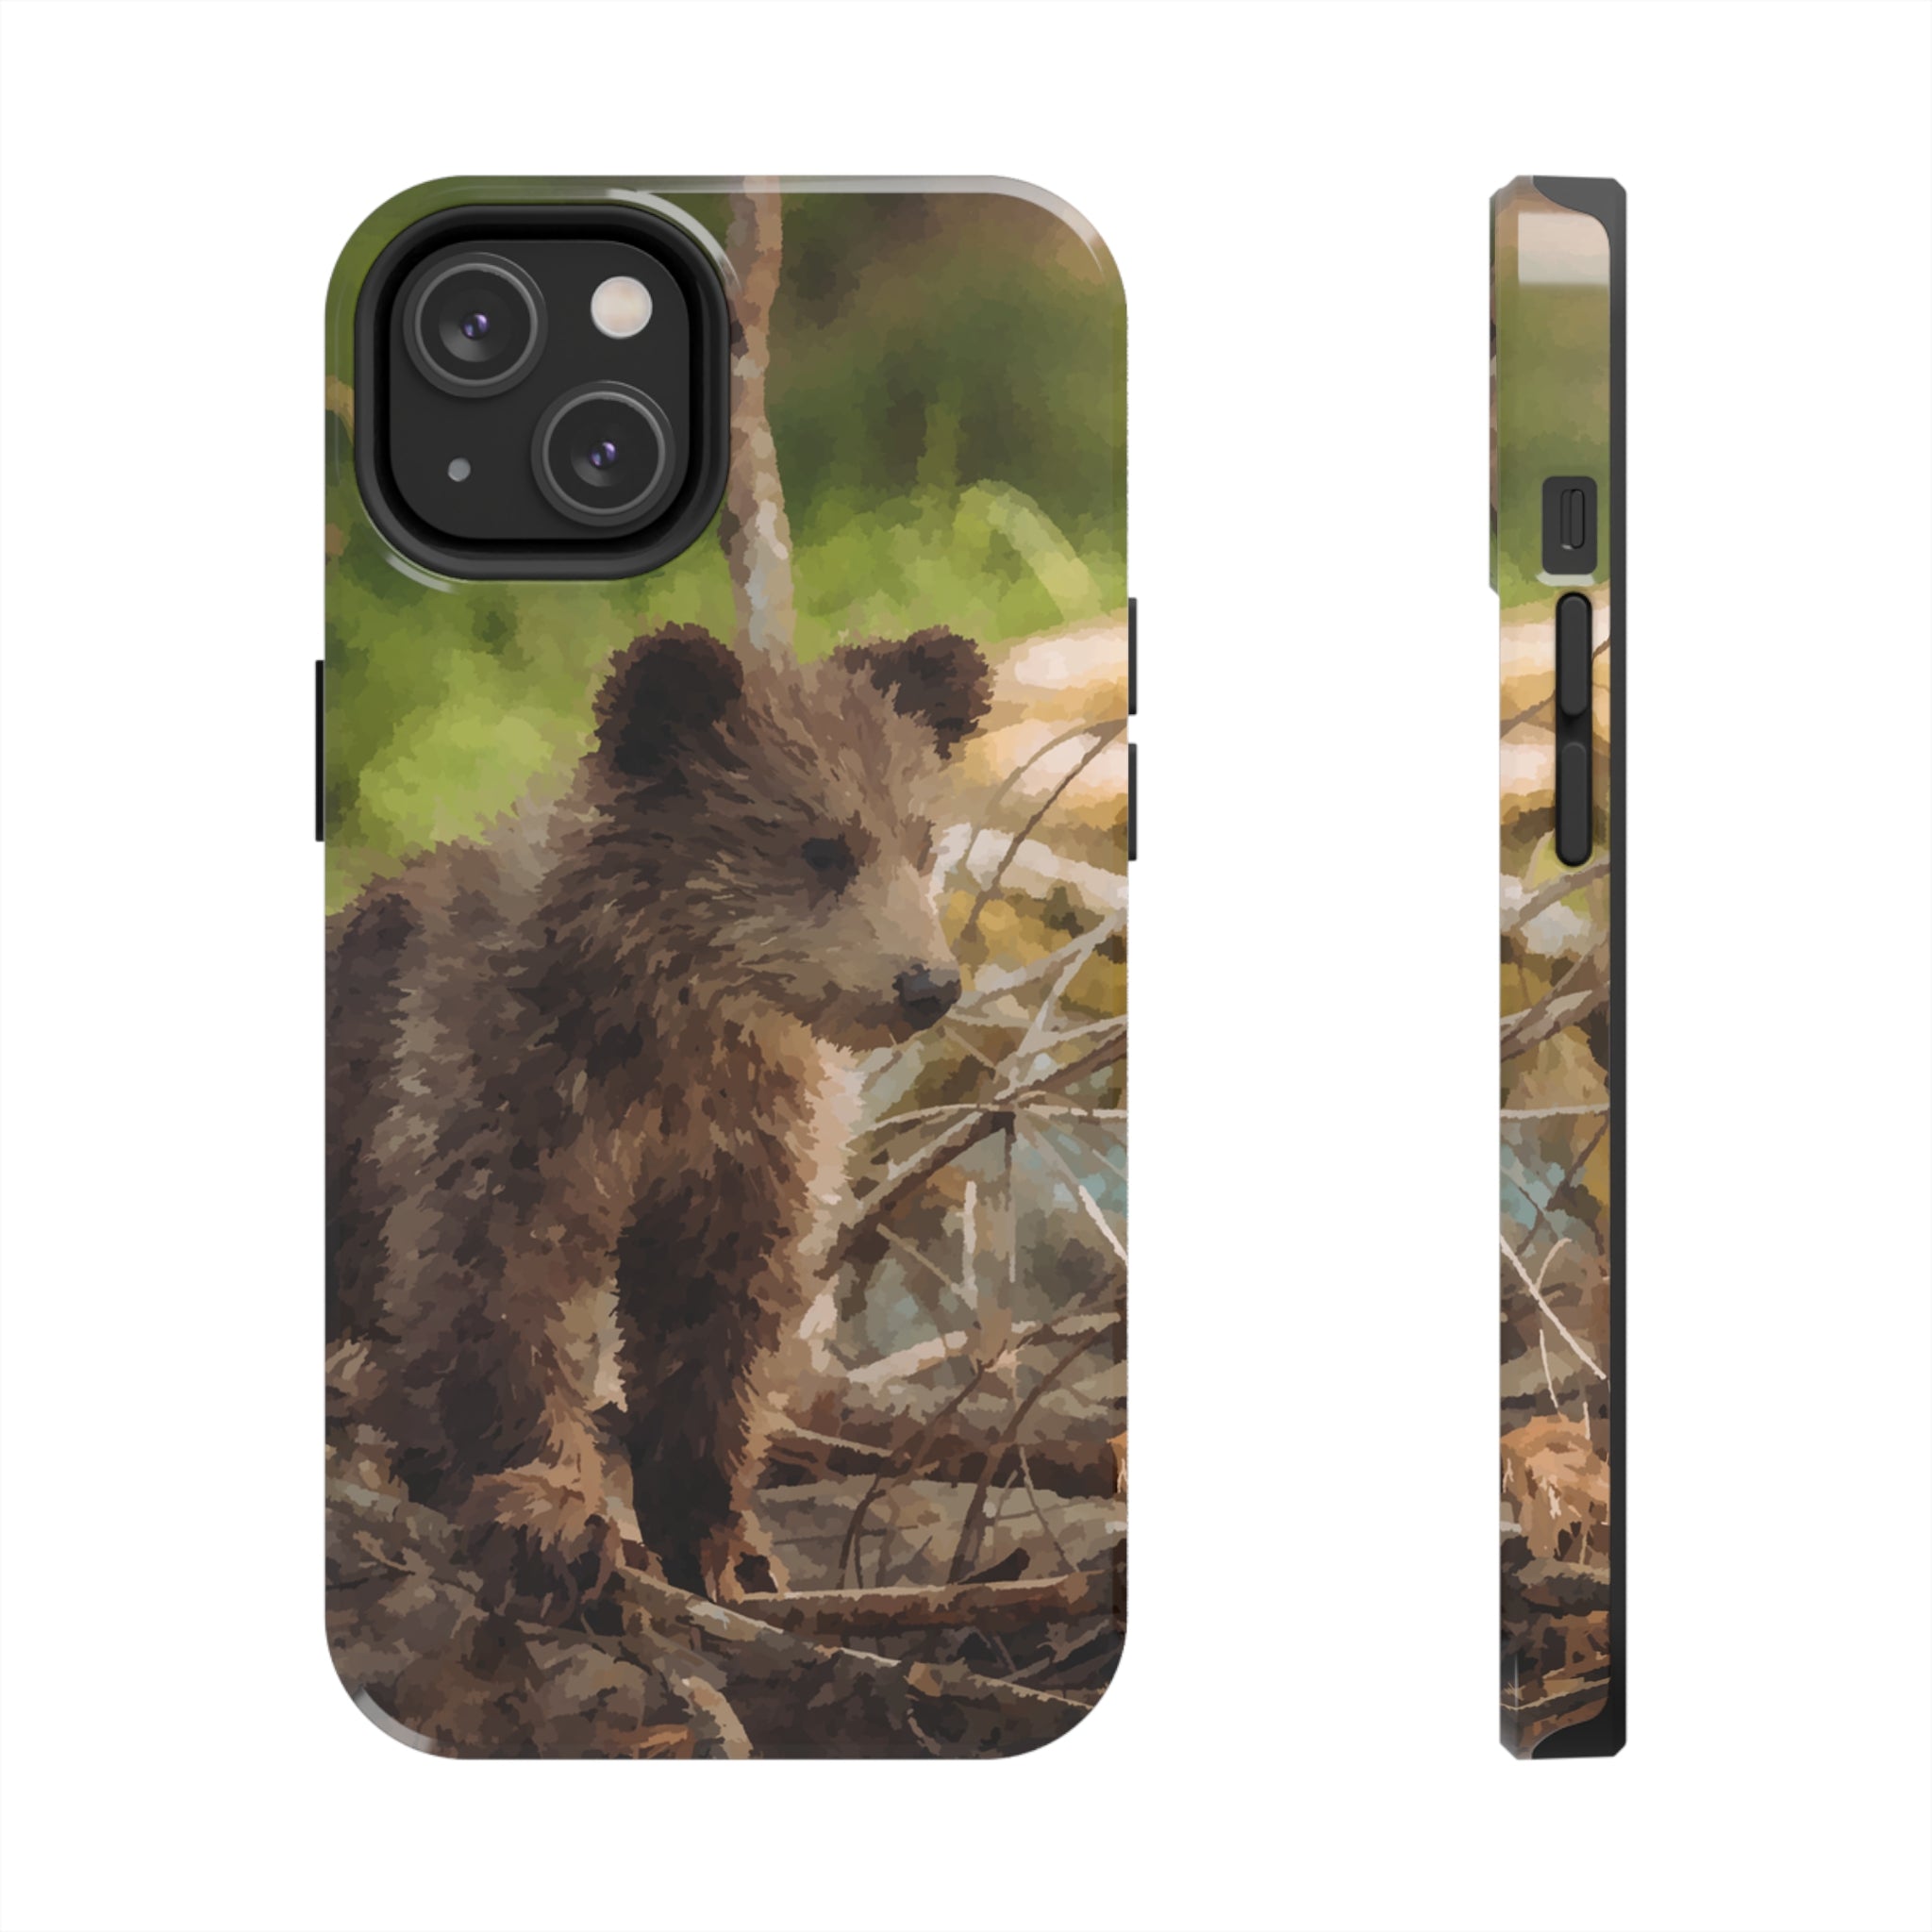 Main image of Bear Cub iPhone Case